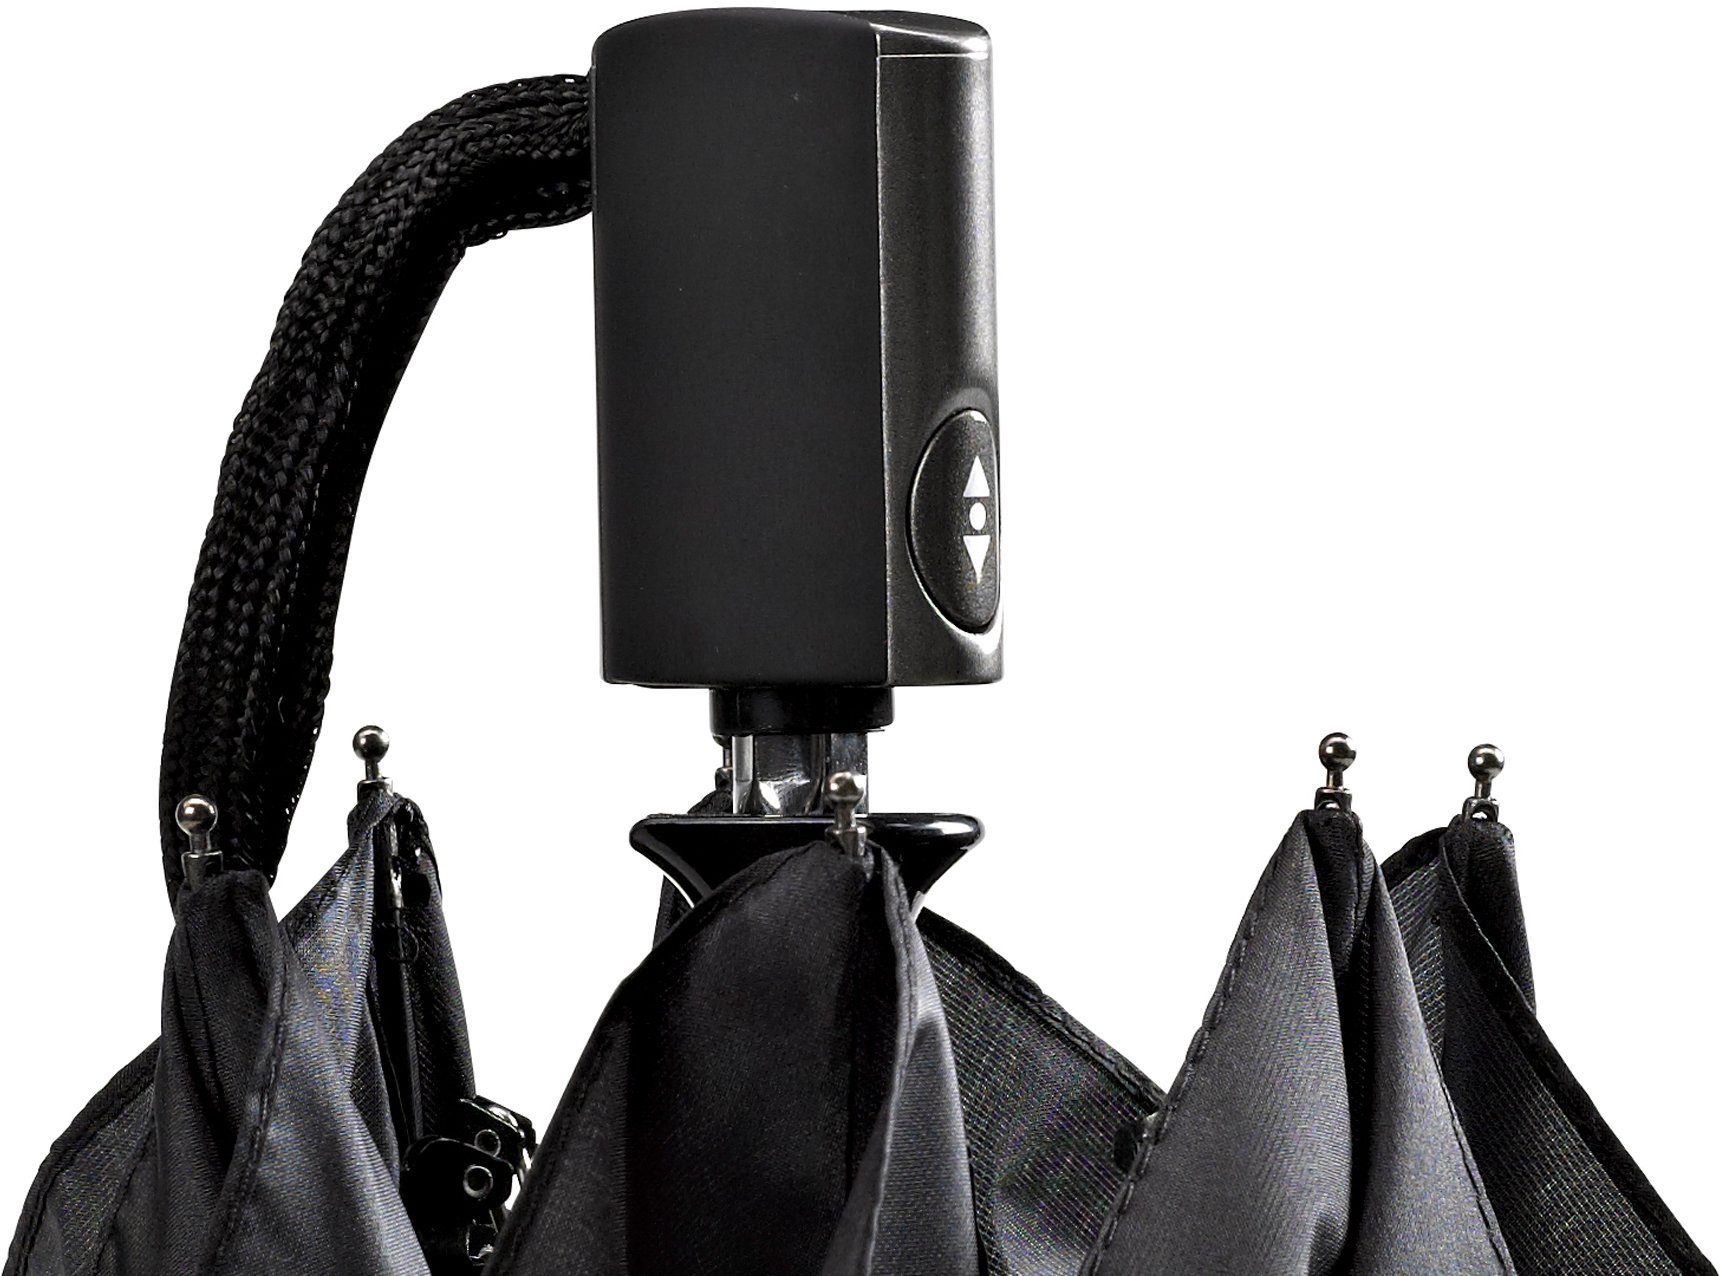 Taschenregenschirm extra flach schwarz, EuroSCHIRM® leicht 3224, Automatik und